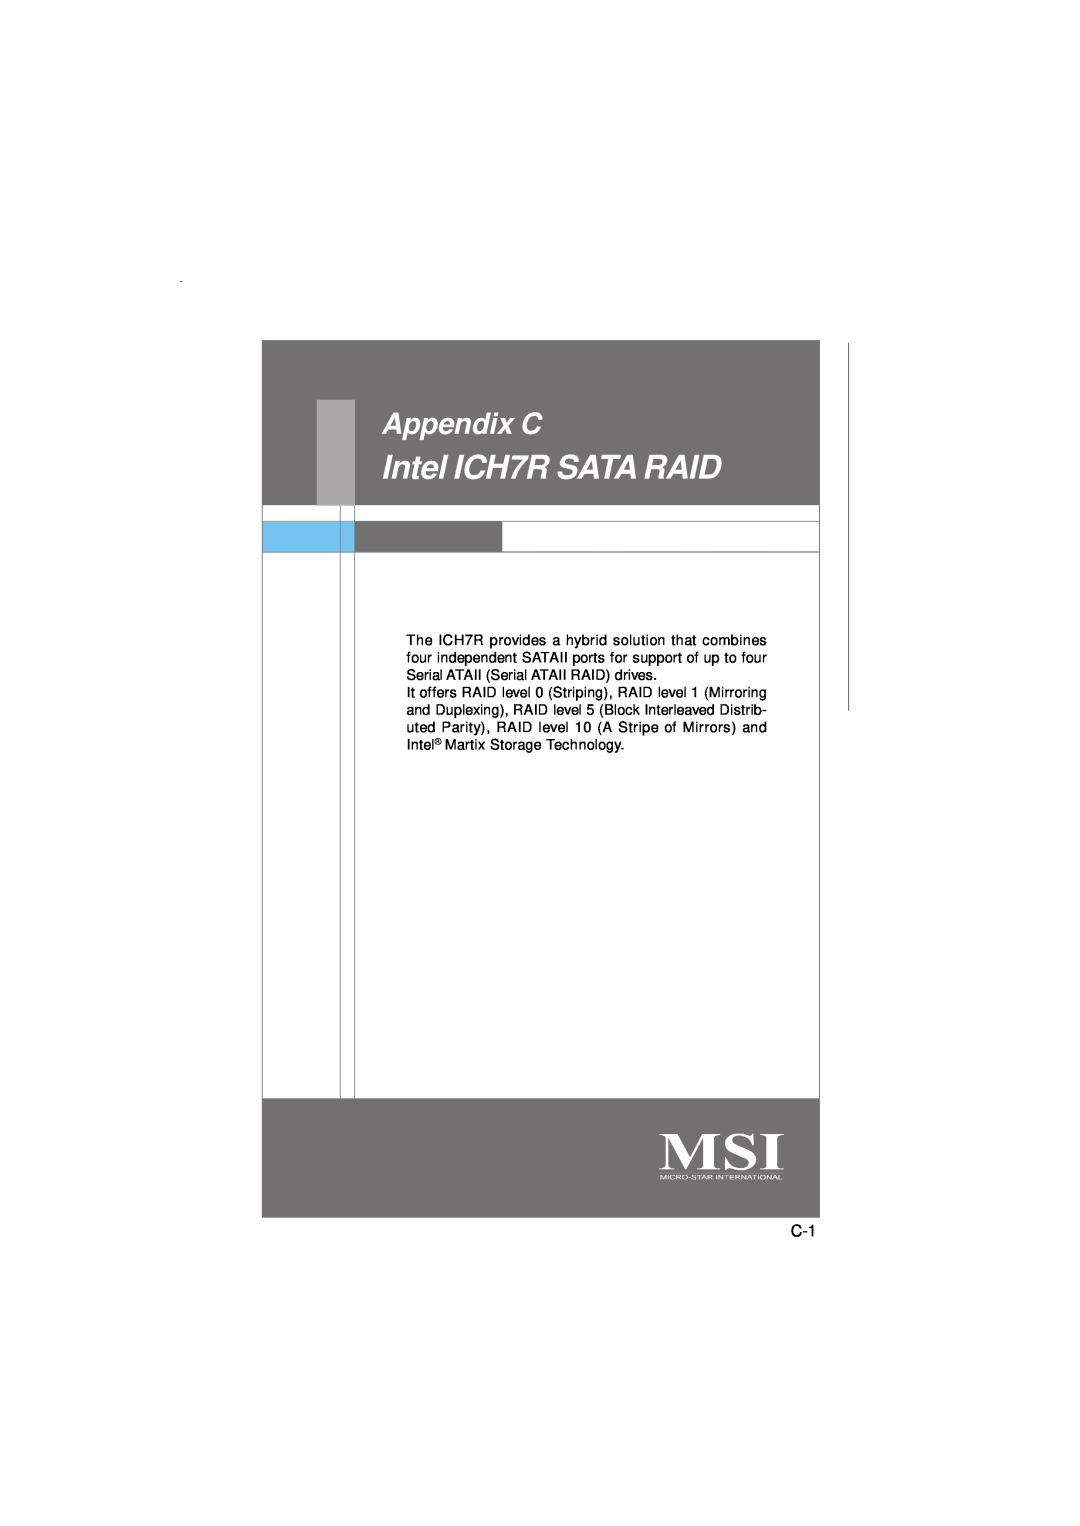 Micro Star  Computer G31M manual Intel ICH7R SATA RAID, Appendix C 